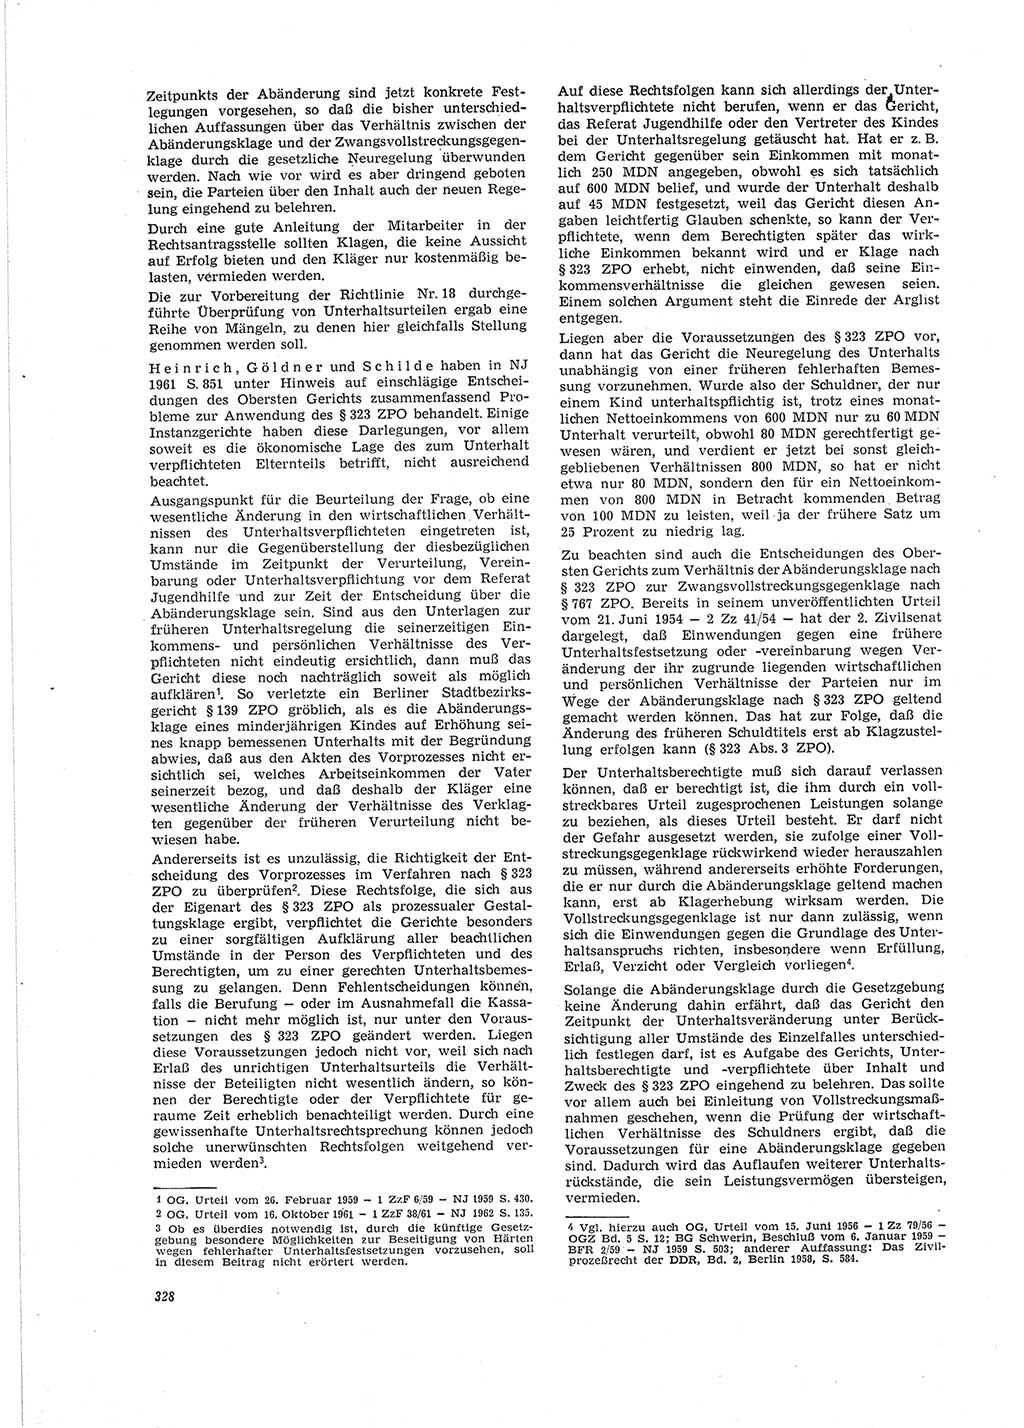 Neue Justiz (NJ), Zeitschrift für Recht und Rechtswissenschaft [Deutsche Demokratische Republik (DDR)], 19. Jahrgang 1965, Seite 328 (NJ DDR 1965, S. 328)